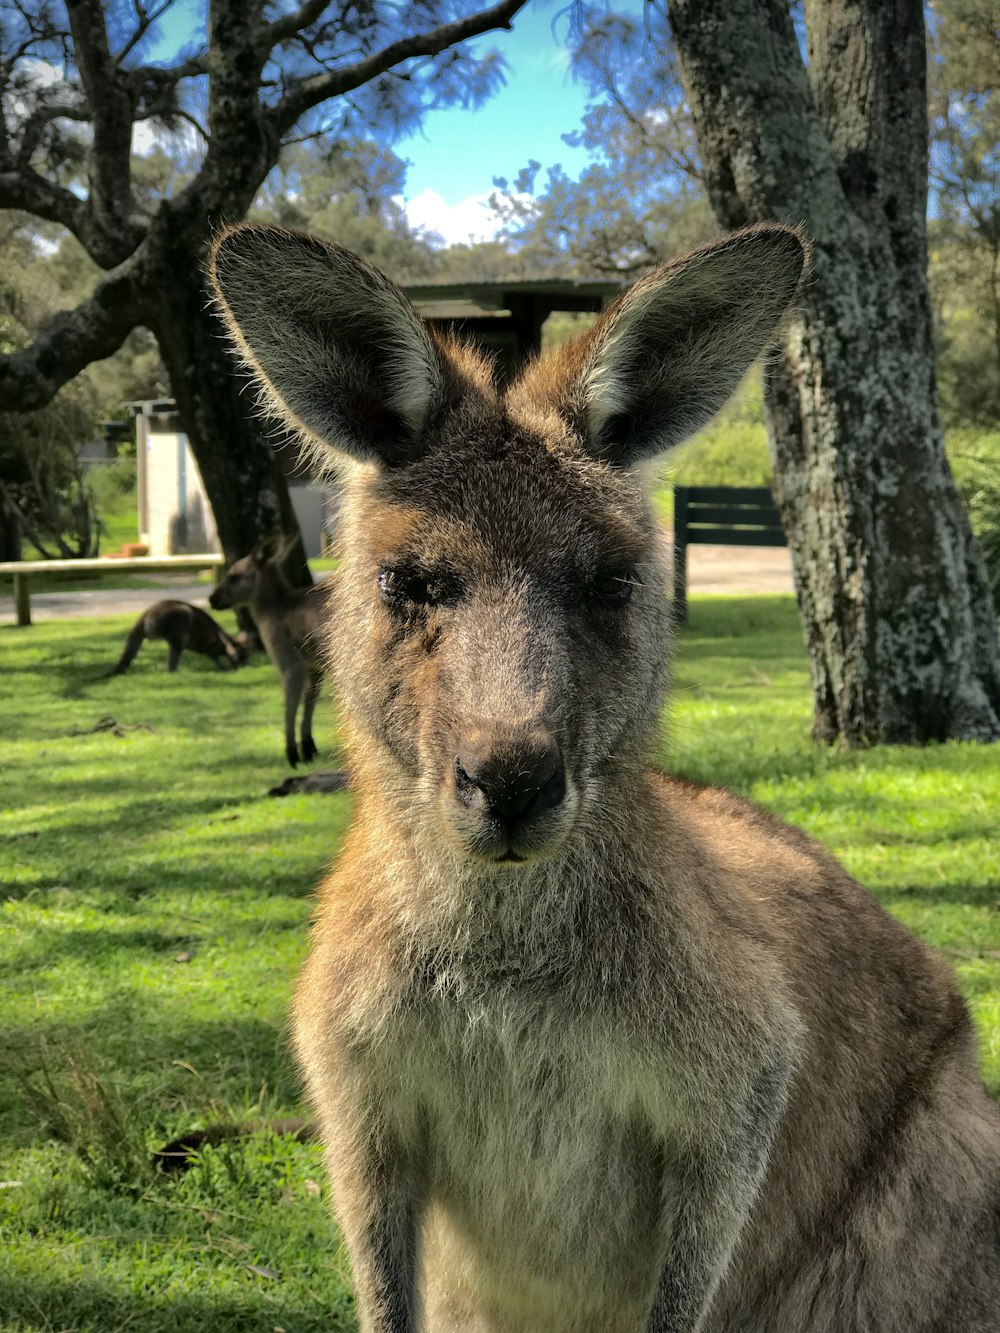 adult kangaroo near kangaroos and trees during day